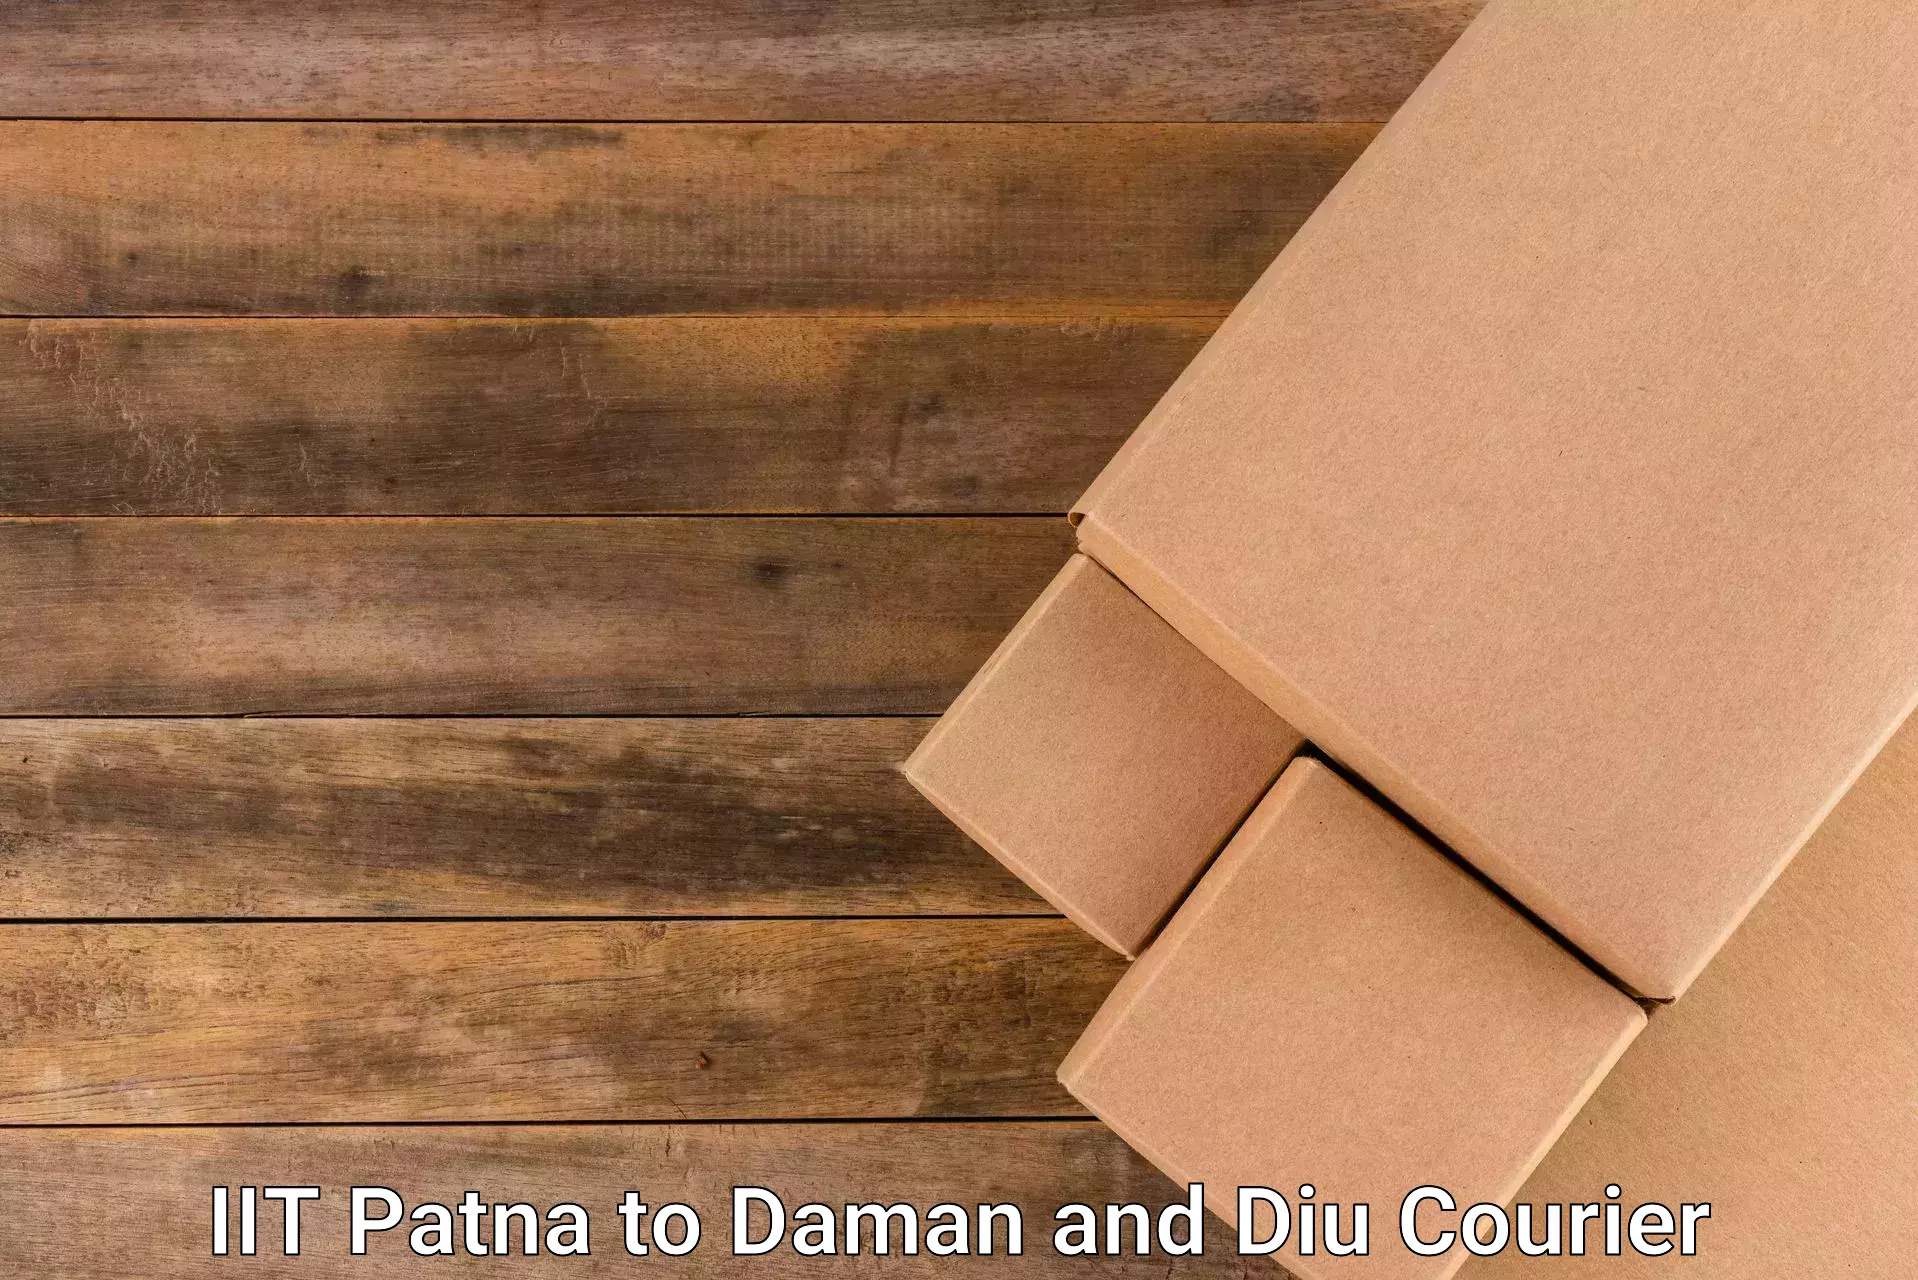 Quick parcel dispatch IIT Patna to Daman and Diu